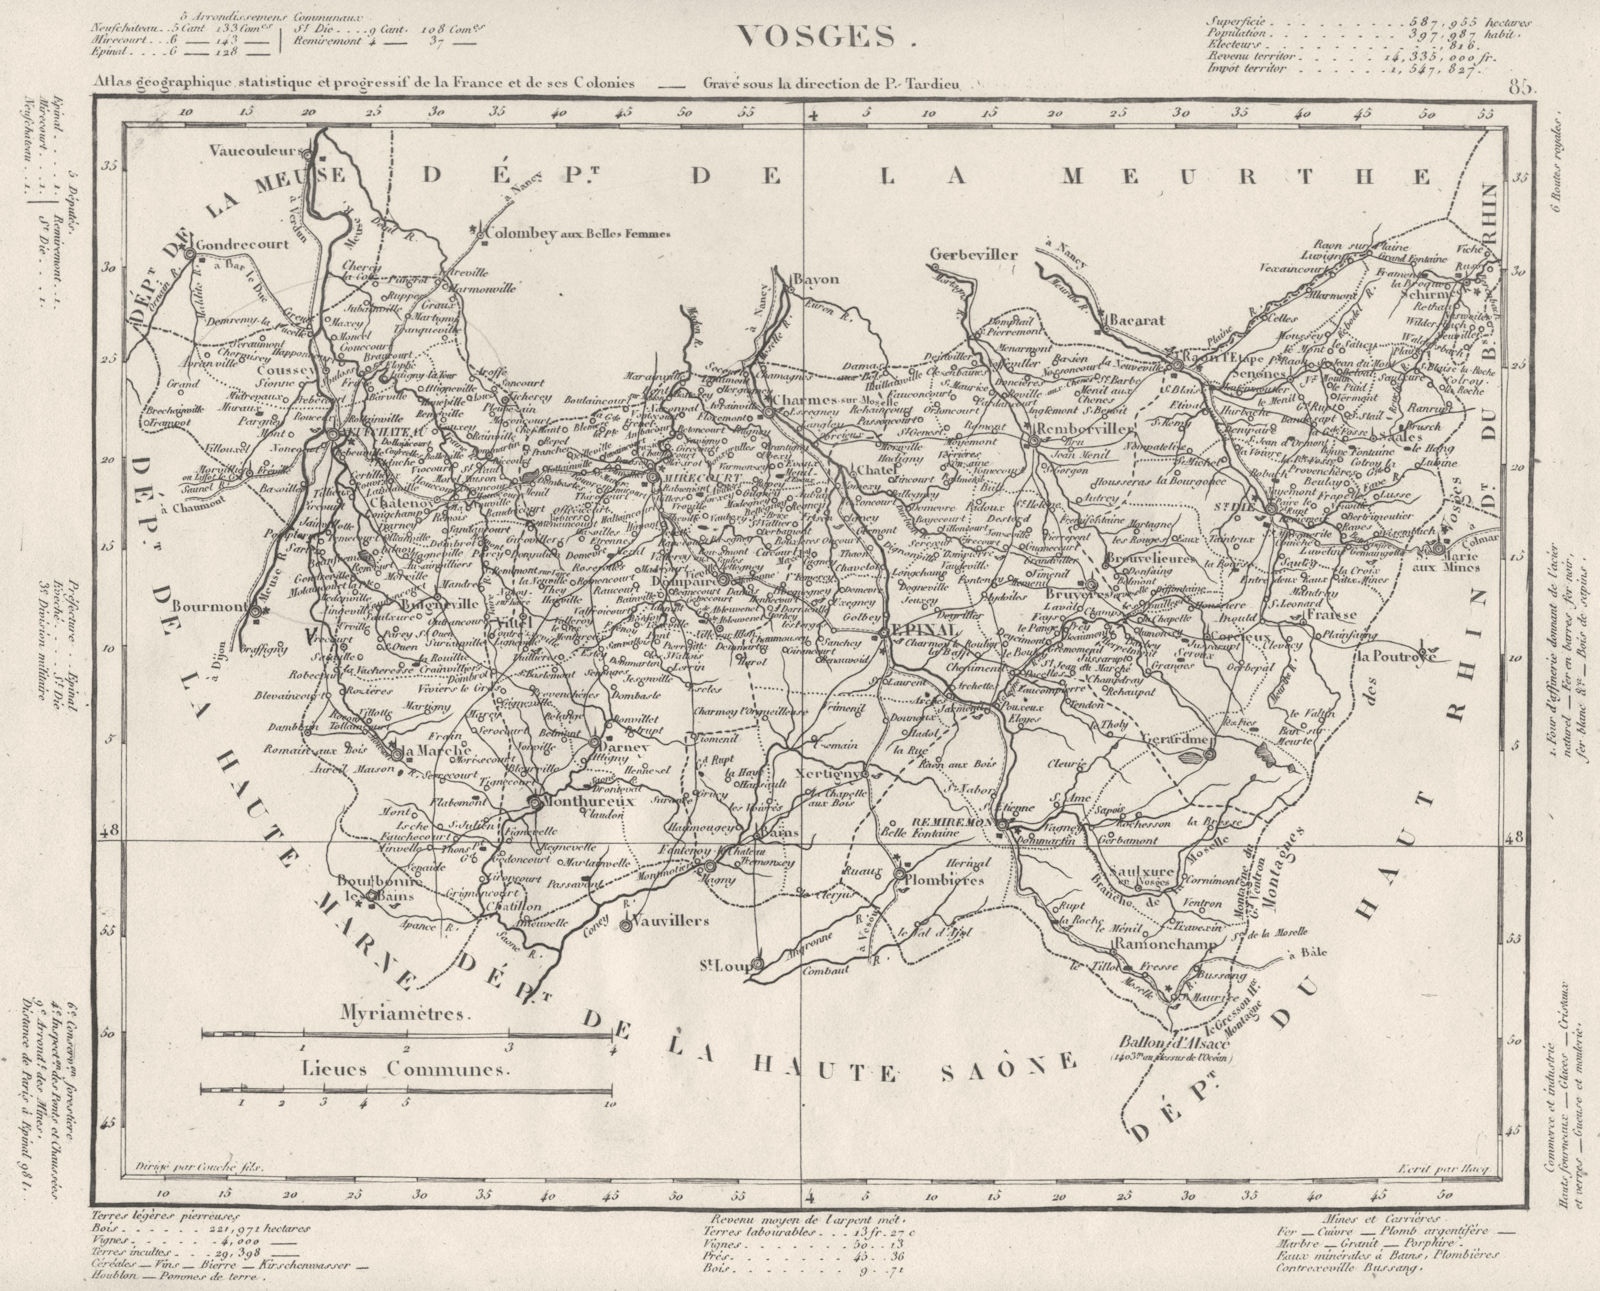 VOSGES. Vosges département. Tardieu 1830 old antique vintage map plan chart